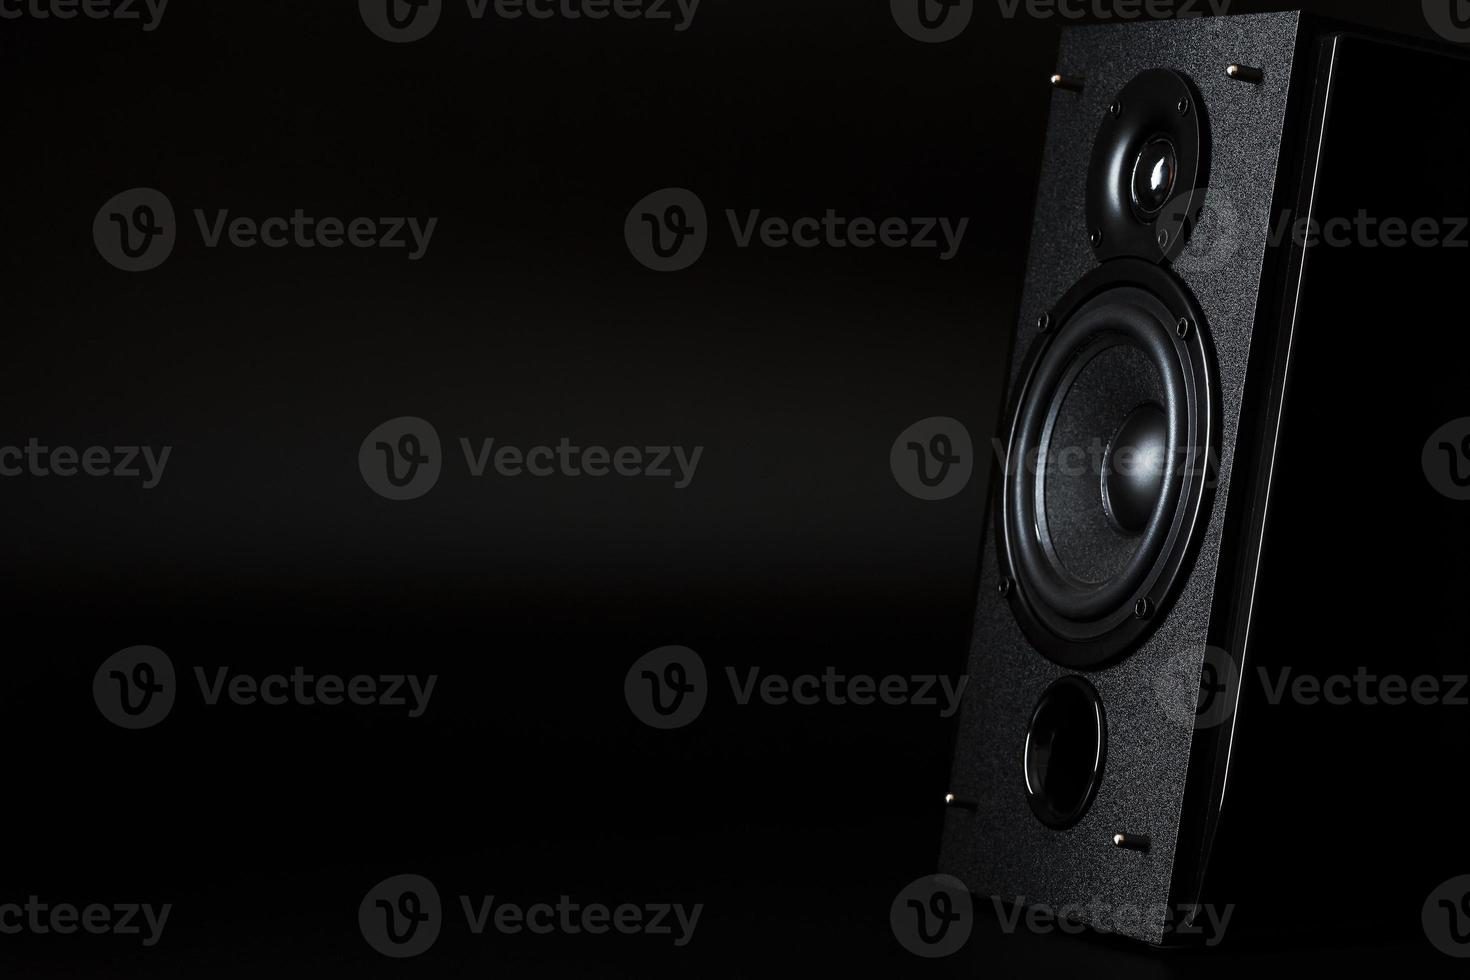 audio högtalare systemet på en svart bakgrund. minimalistisk begrepp foto